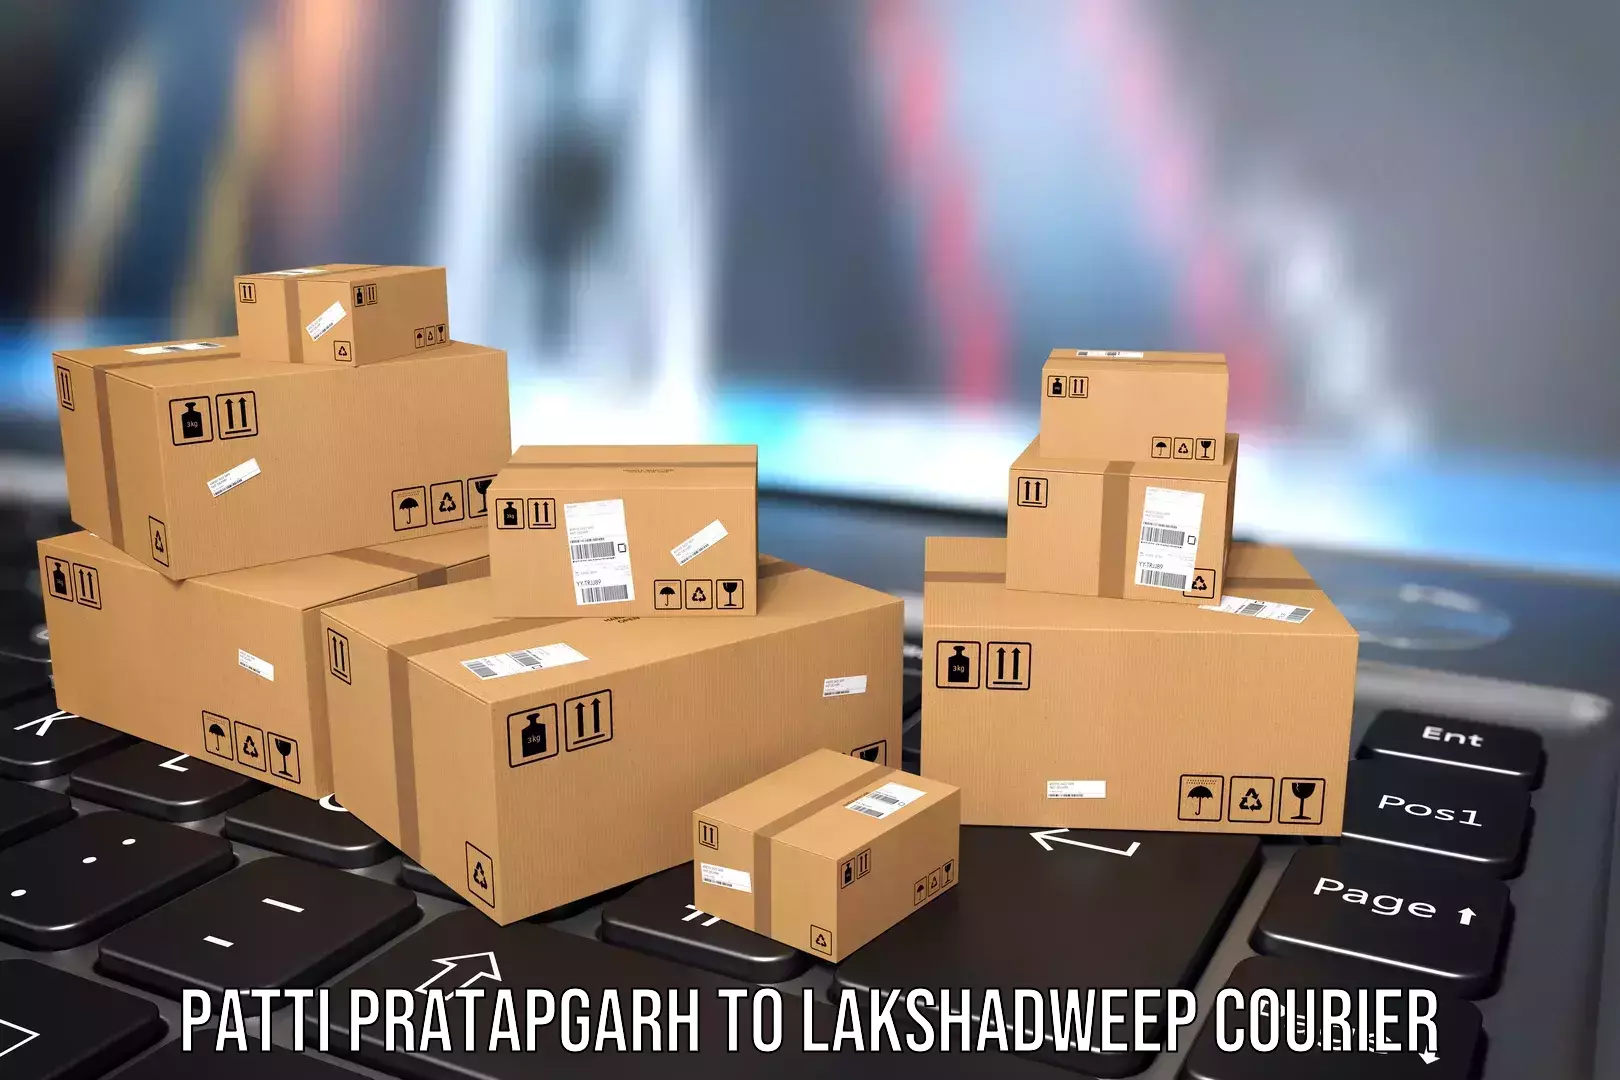 Luggage shipment processing Patti Pratapgarh to Lakshadweep